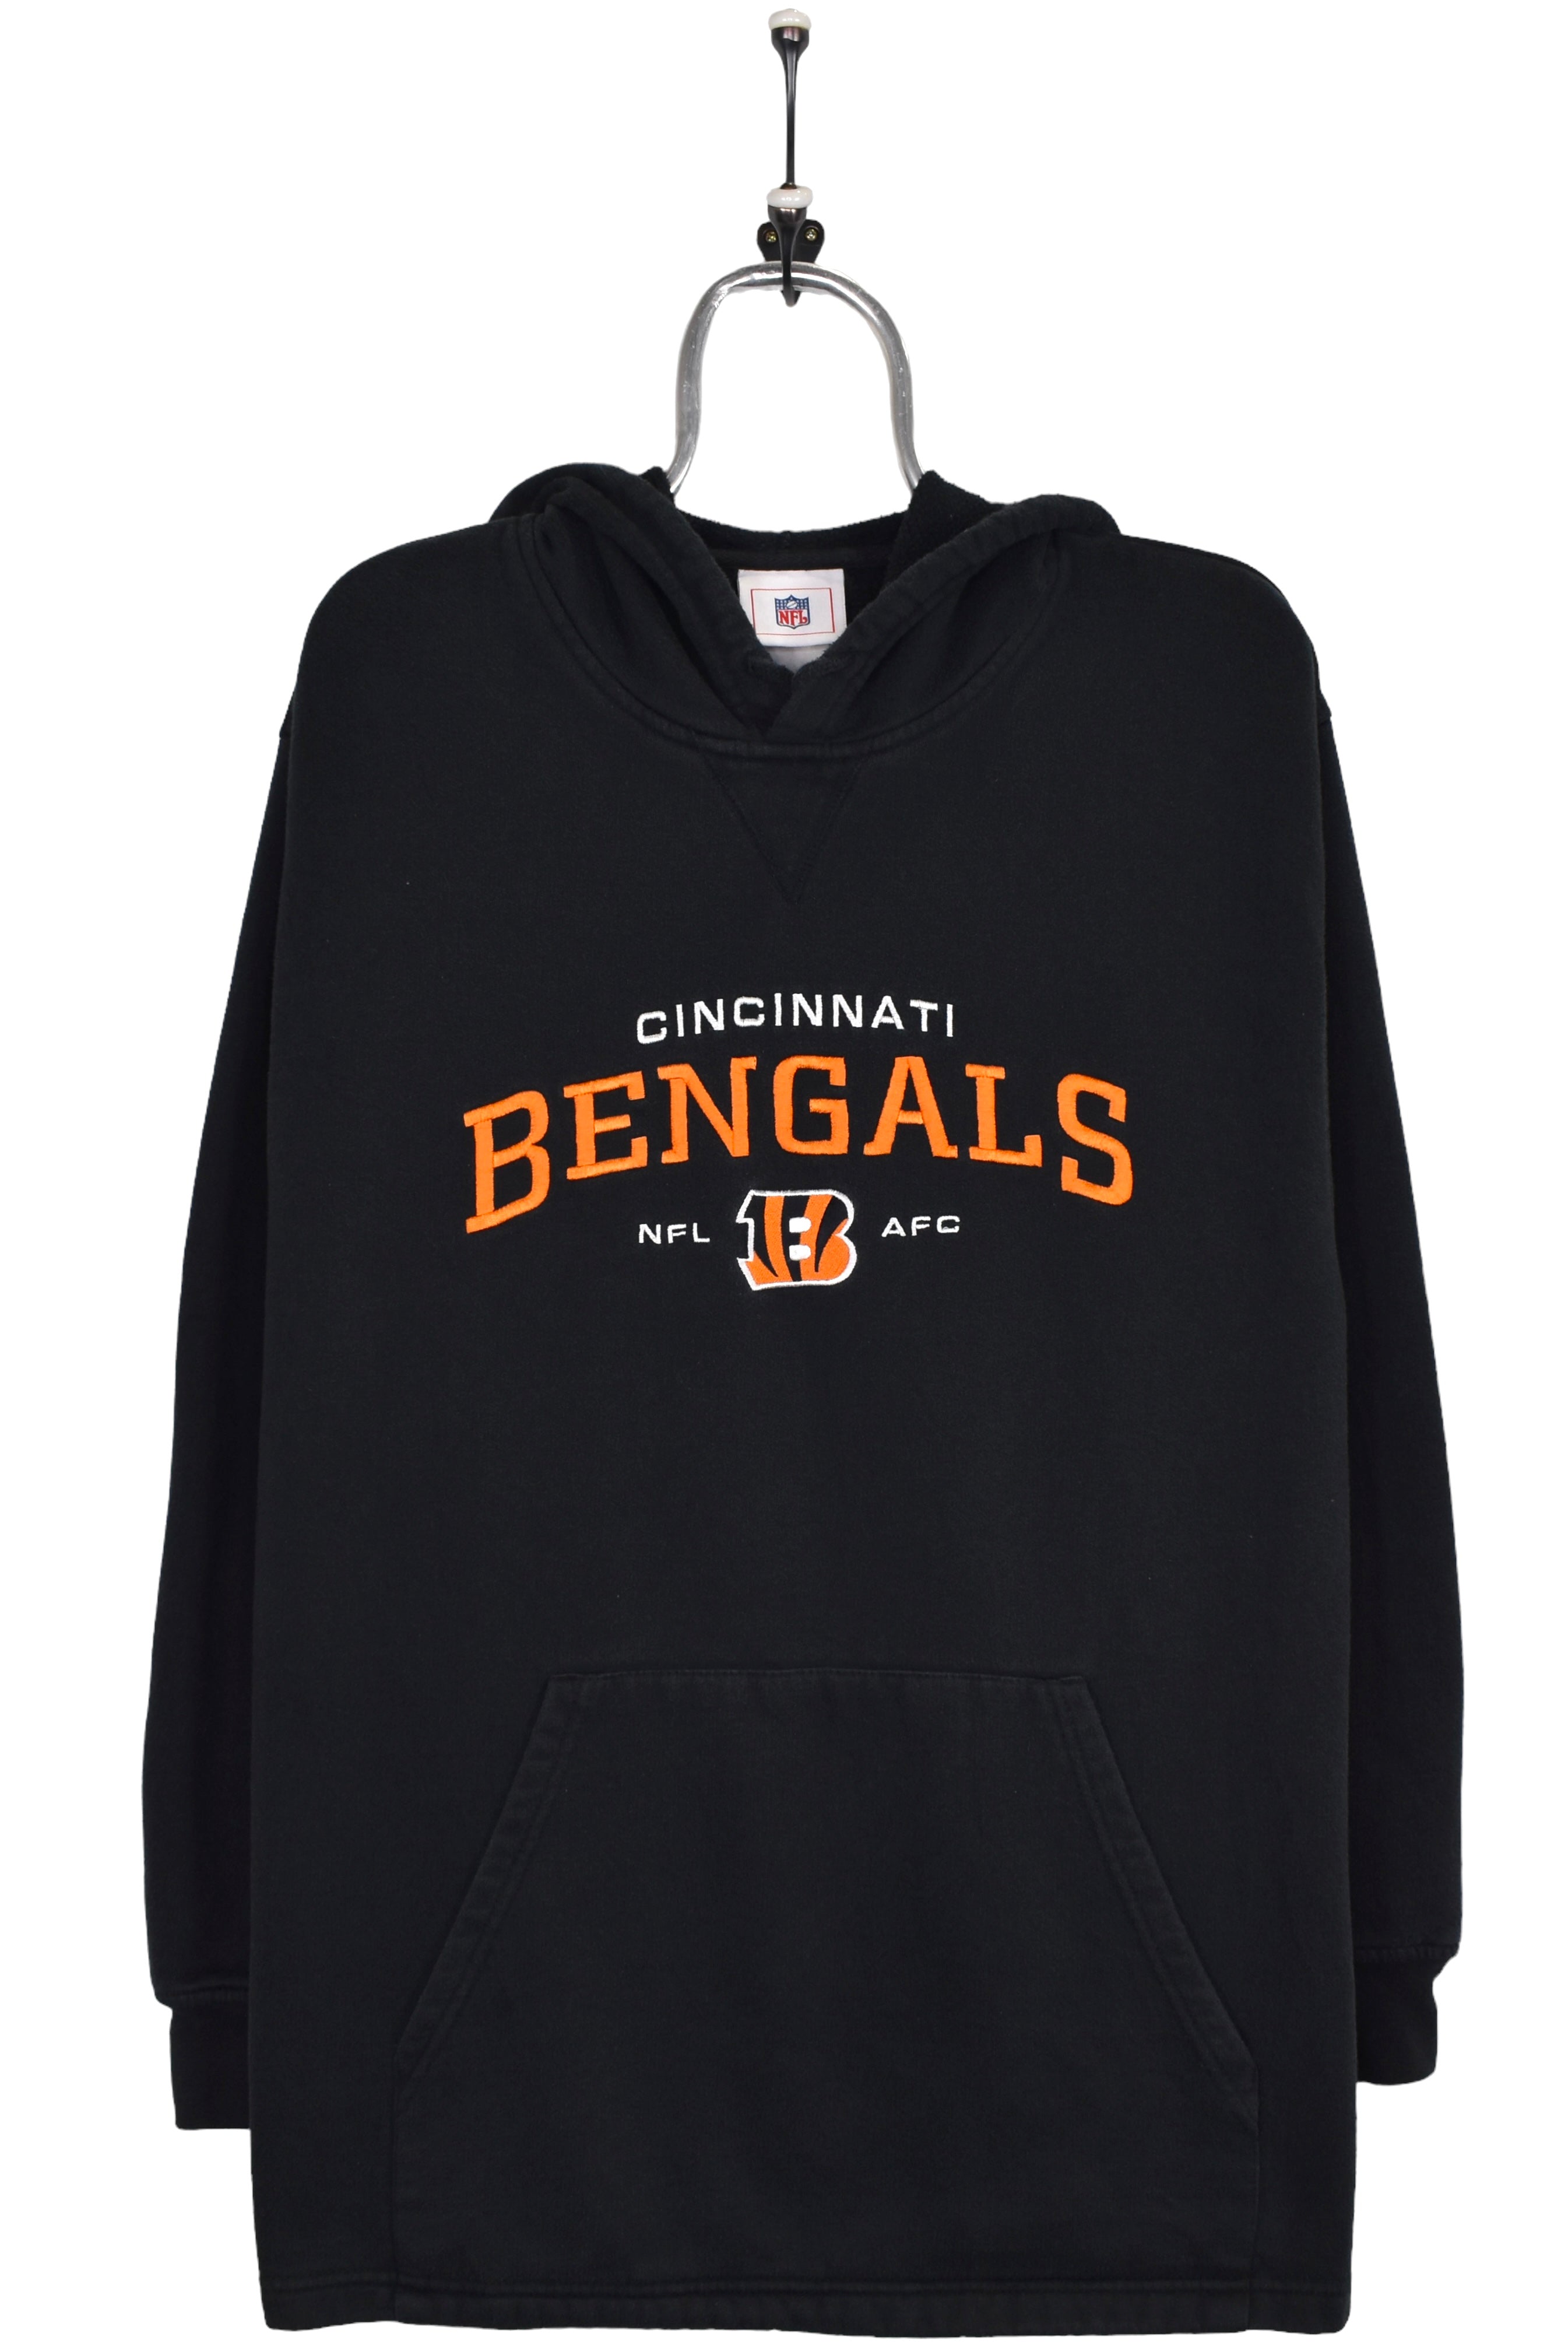 Vintage Cincinnati Bengals hoodie, NFL black embroidered sweatshirt - Large